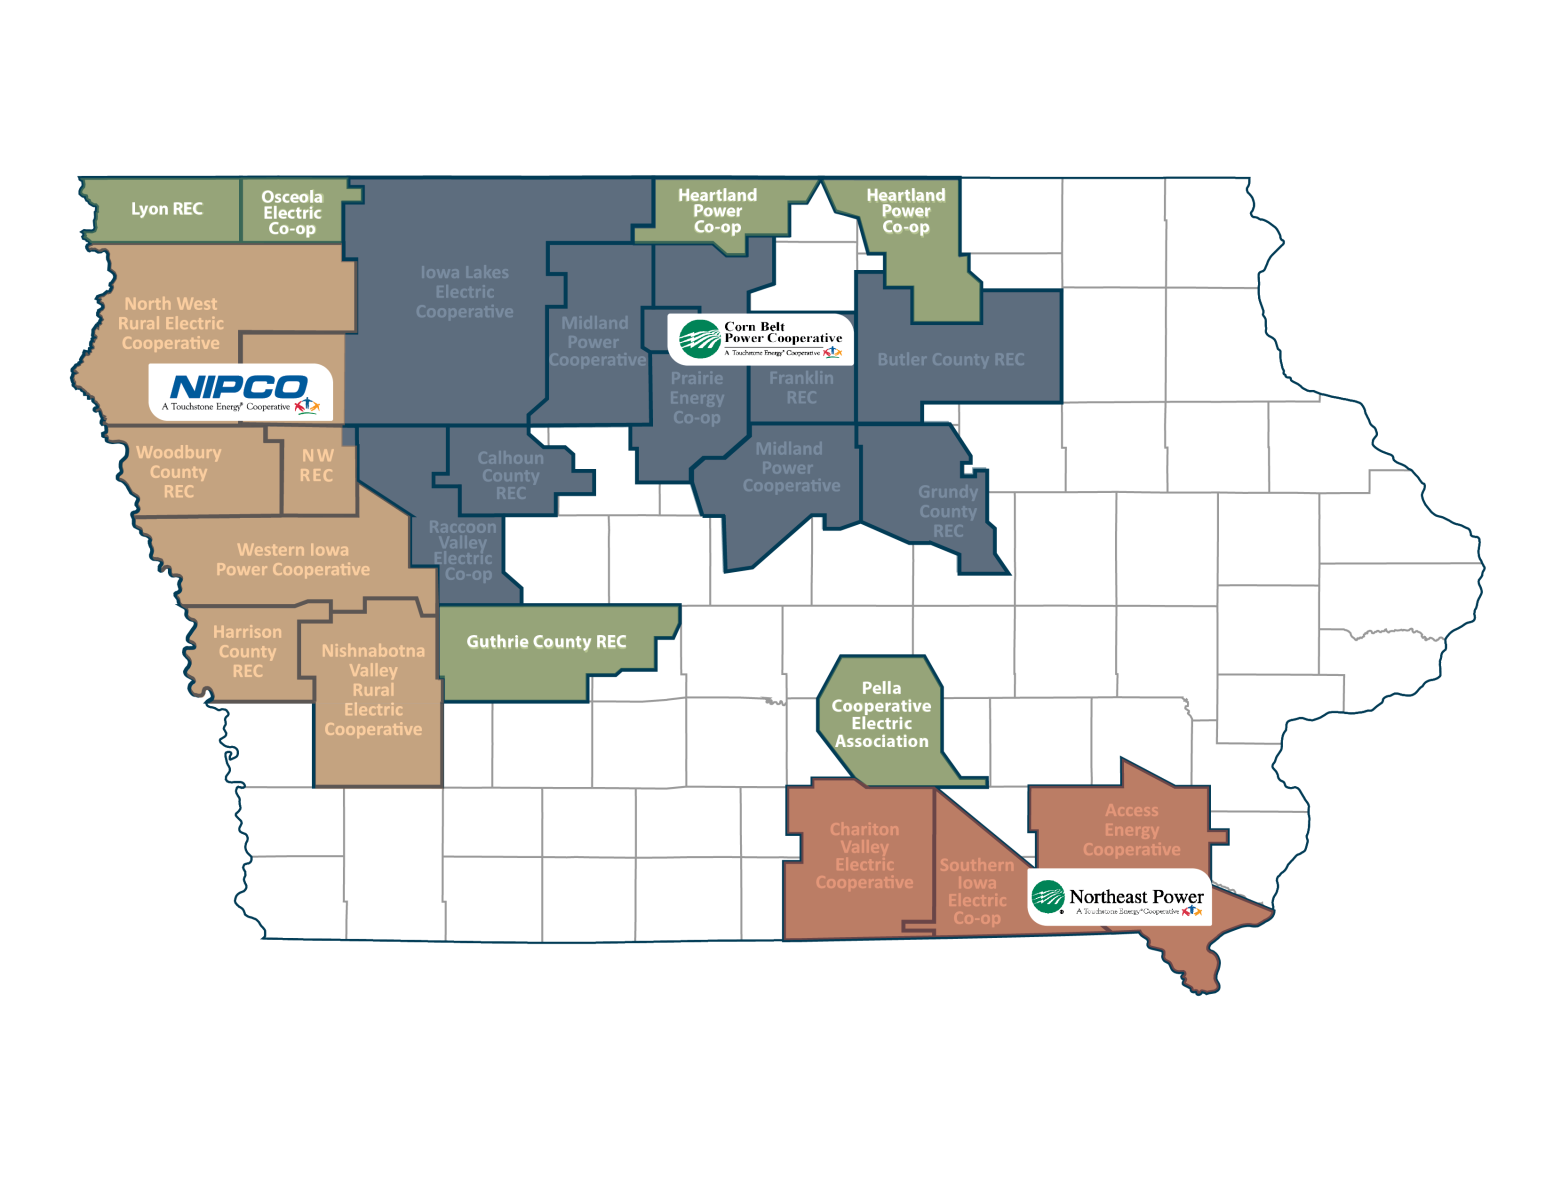 IADG Member Systems in Iowa